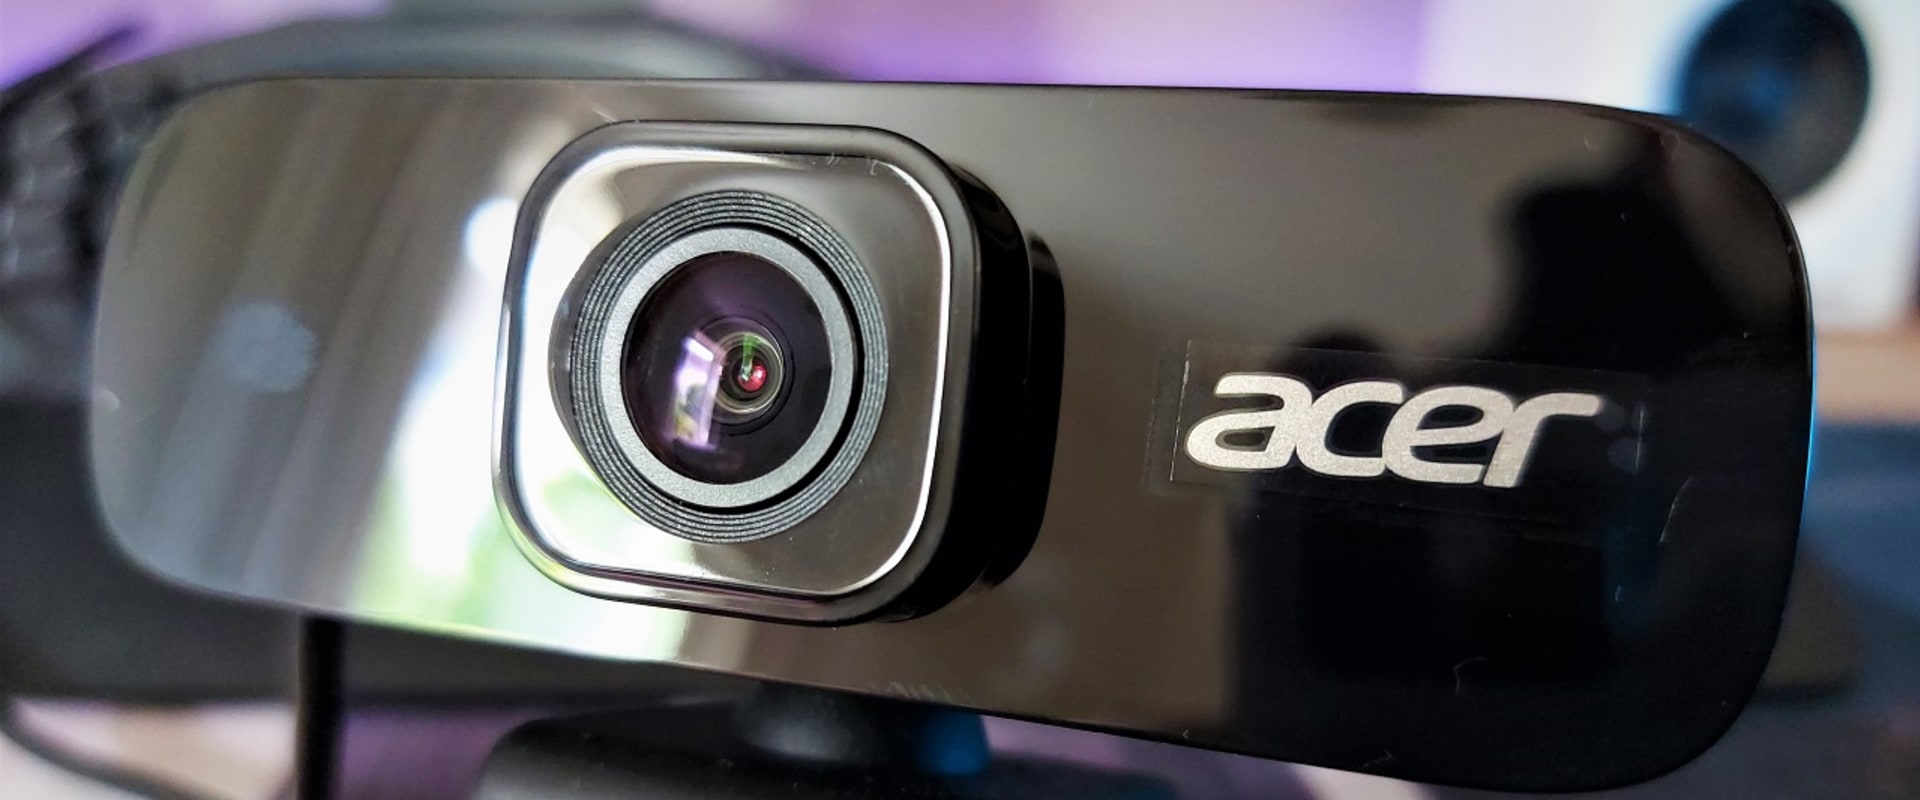 Acer Webcam Reviews